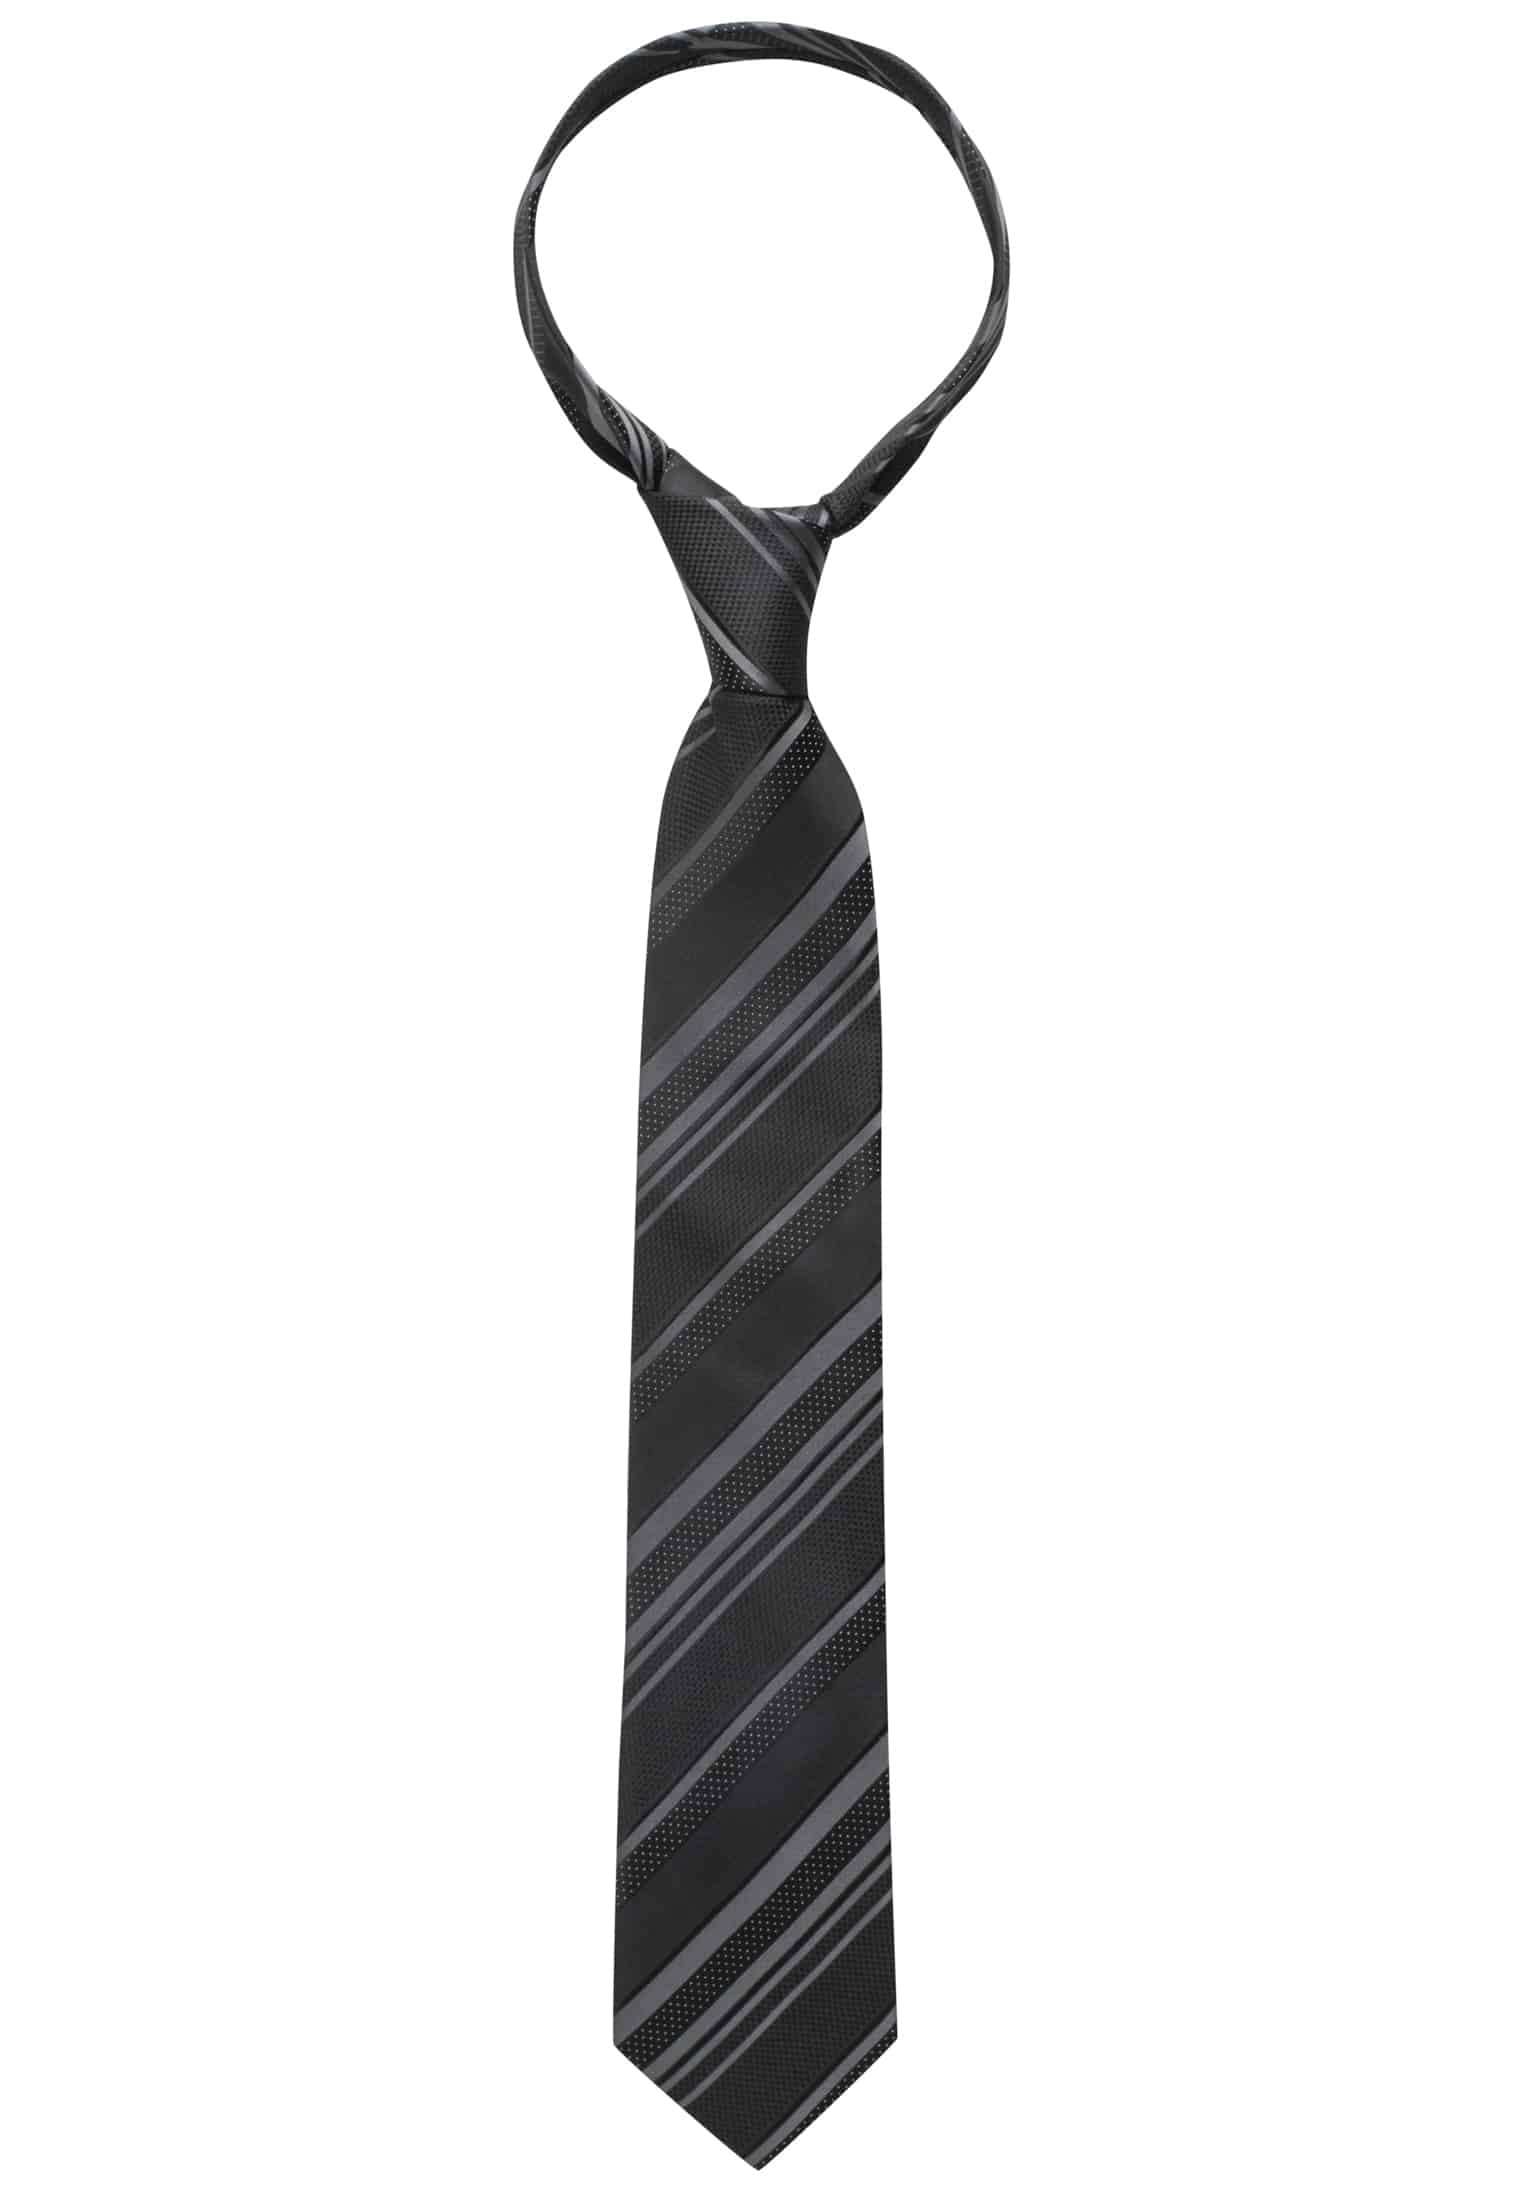 Krawatte in schwarz gestreift 1AC00408-03-91-142 | | 142 | schwarz